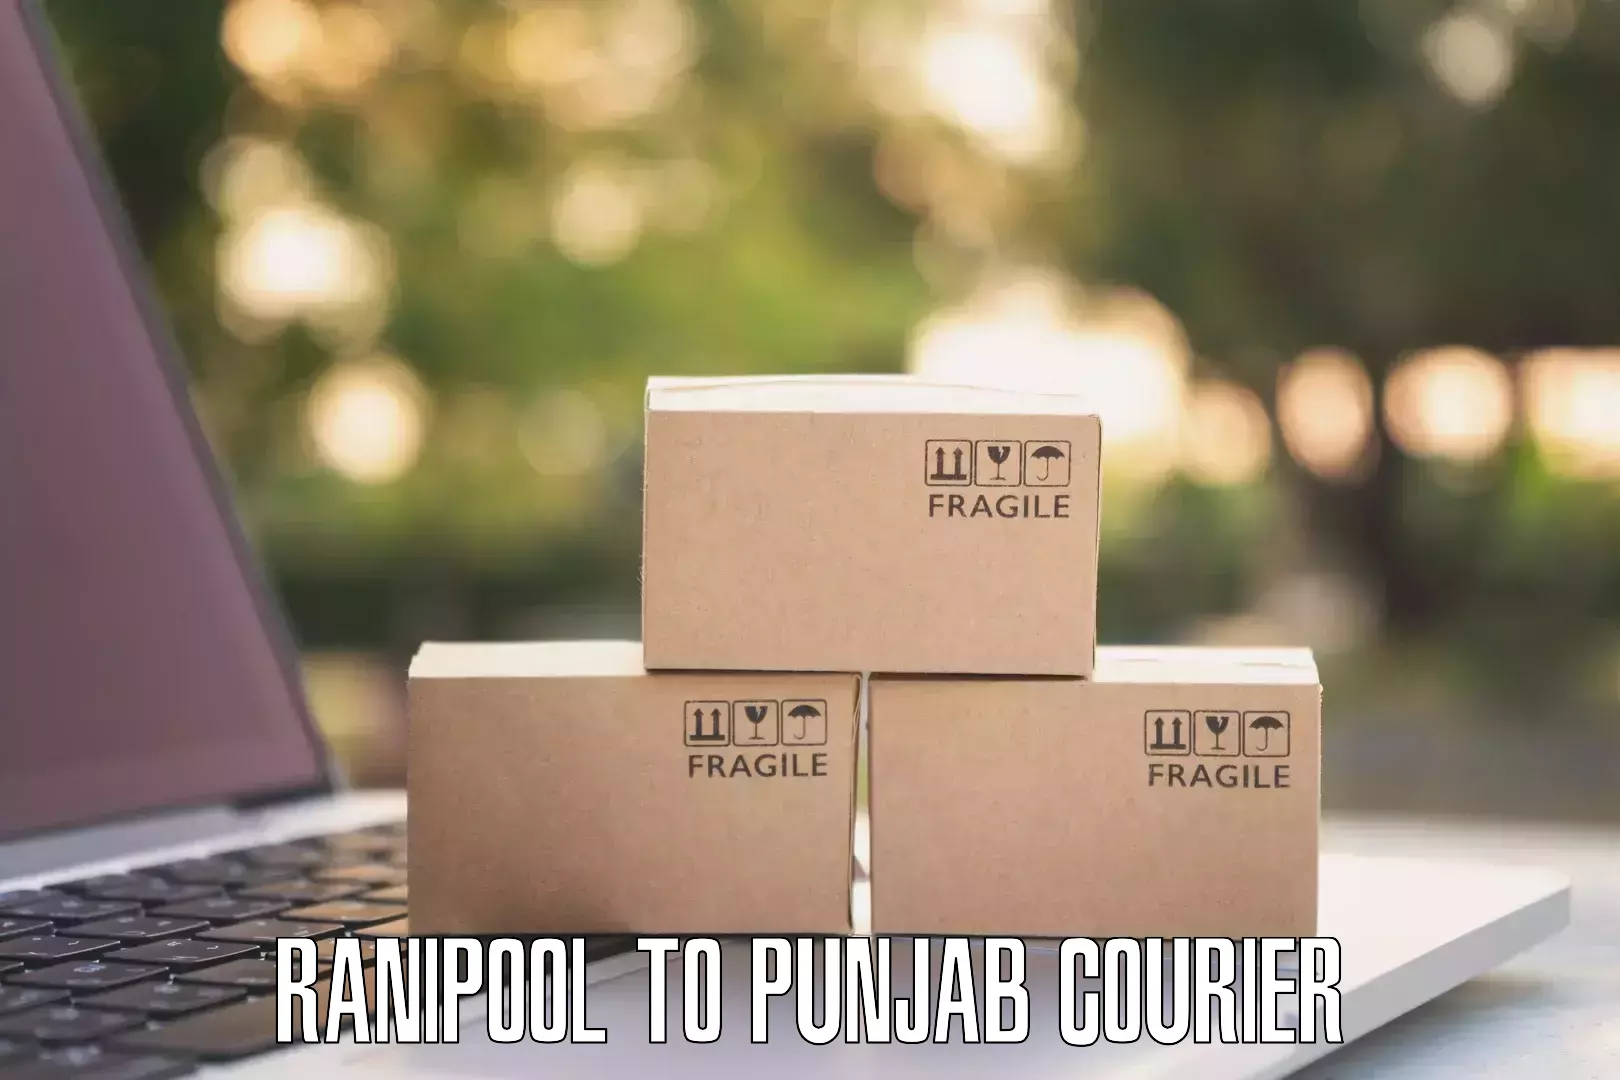 Express package handling Ranipool to Punjab